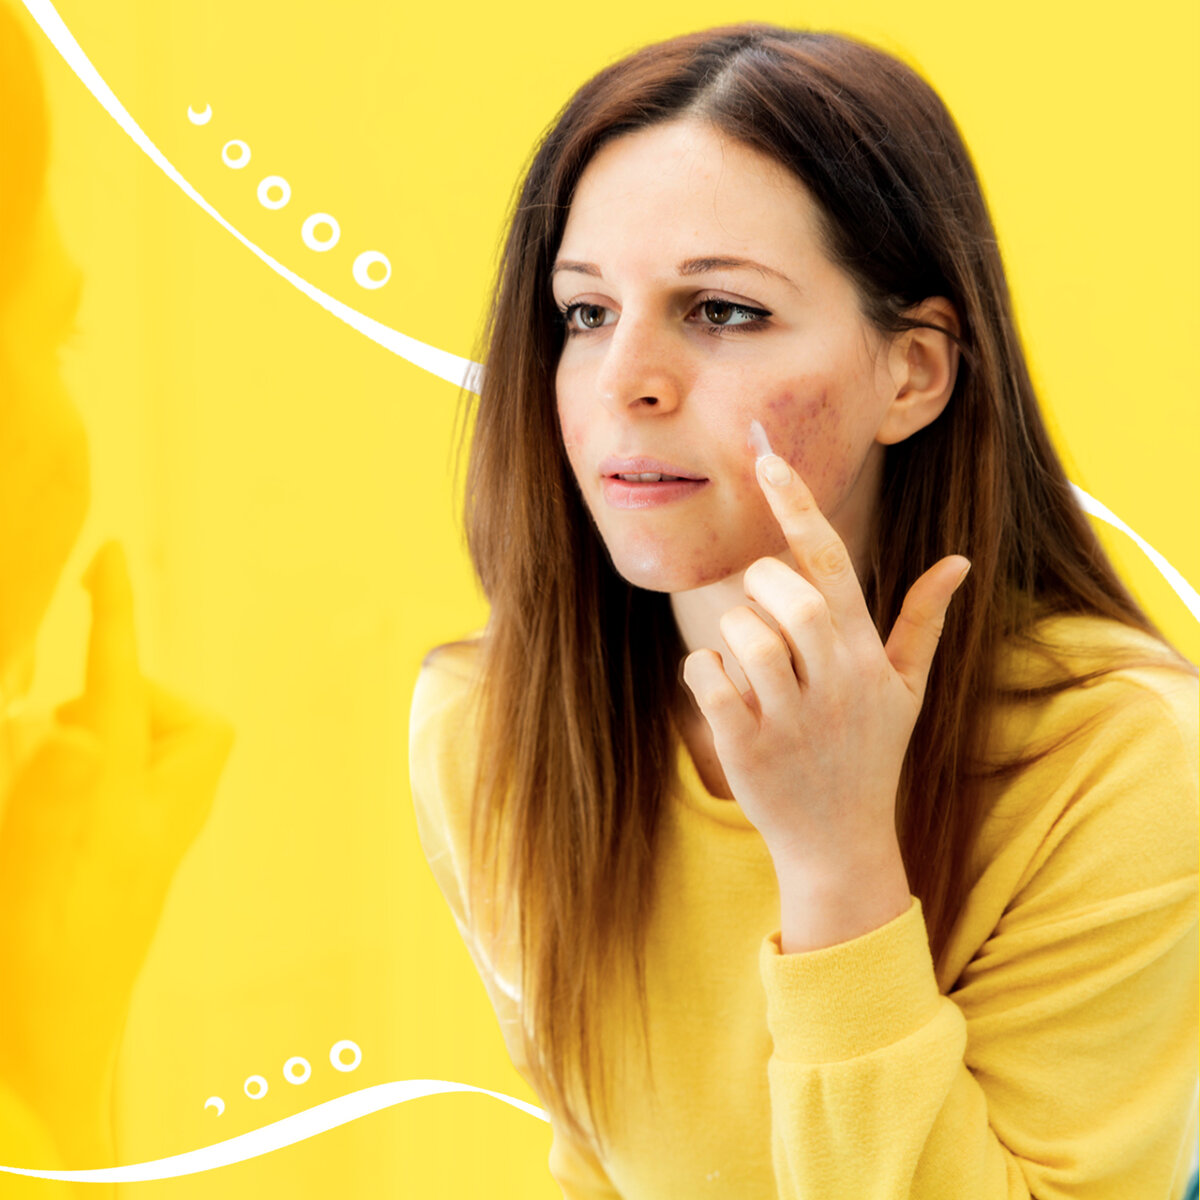 Шрам на лице: сколько времени займет лечение? | Красота без шрамов | Дзен